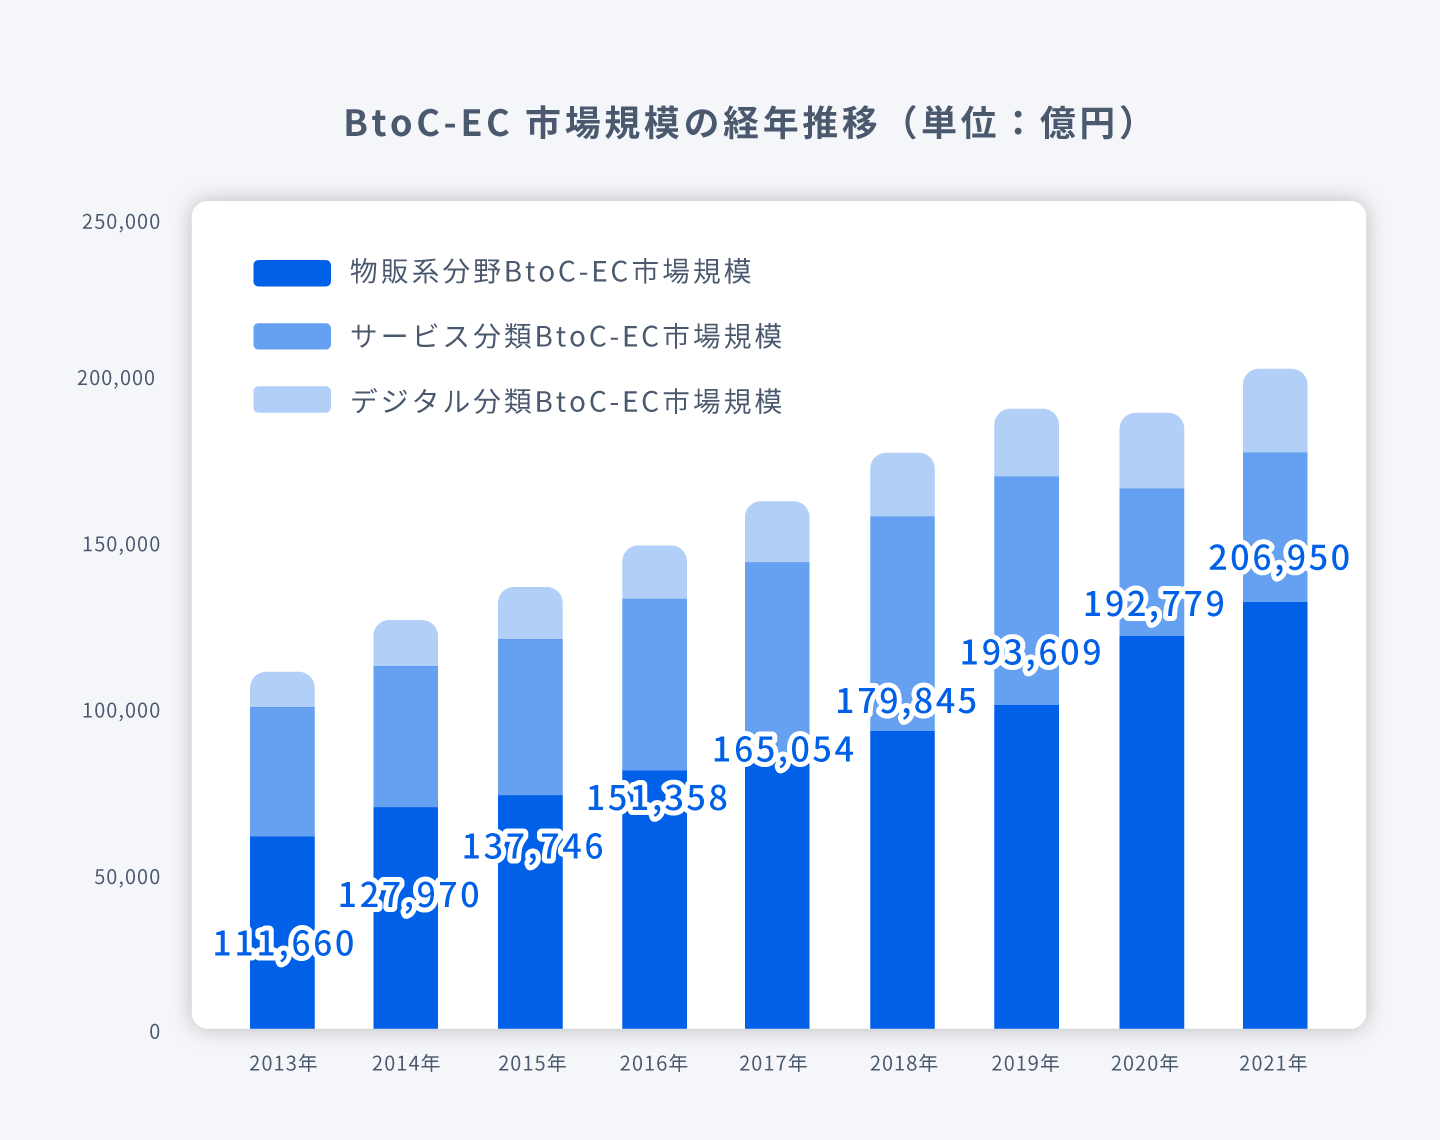 BtoC-EC 市場規模の経年推移のグラフ